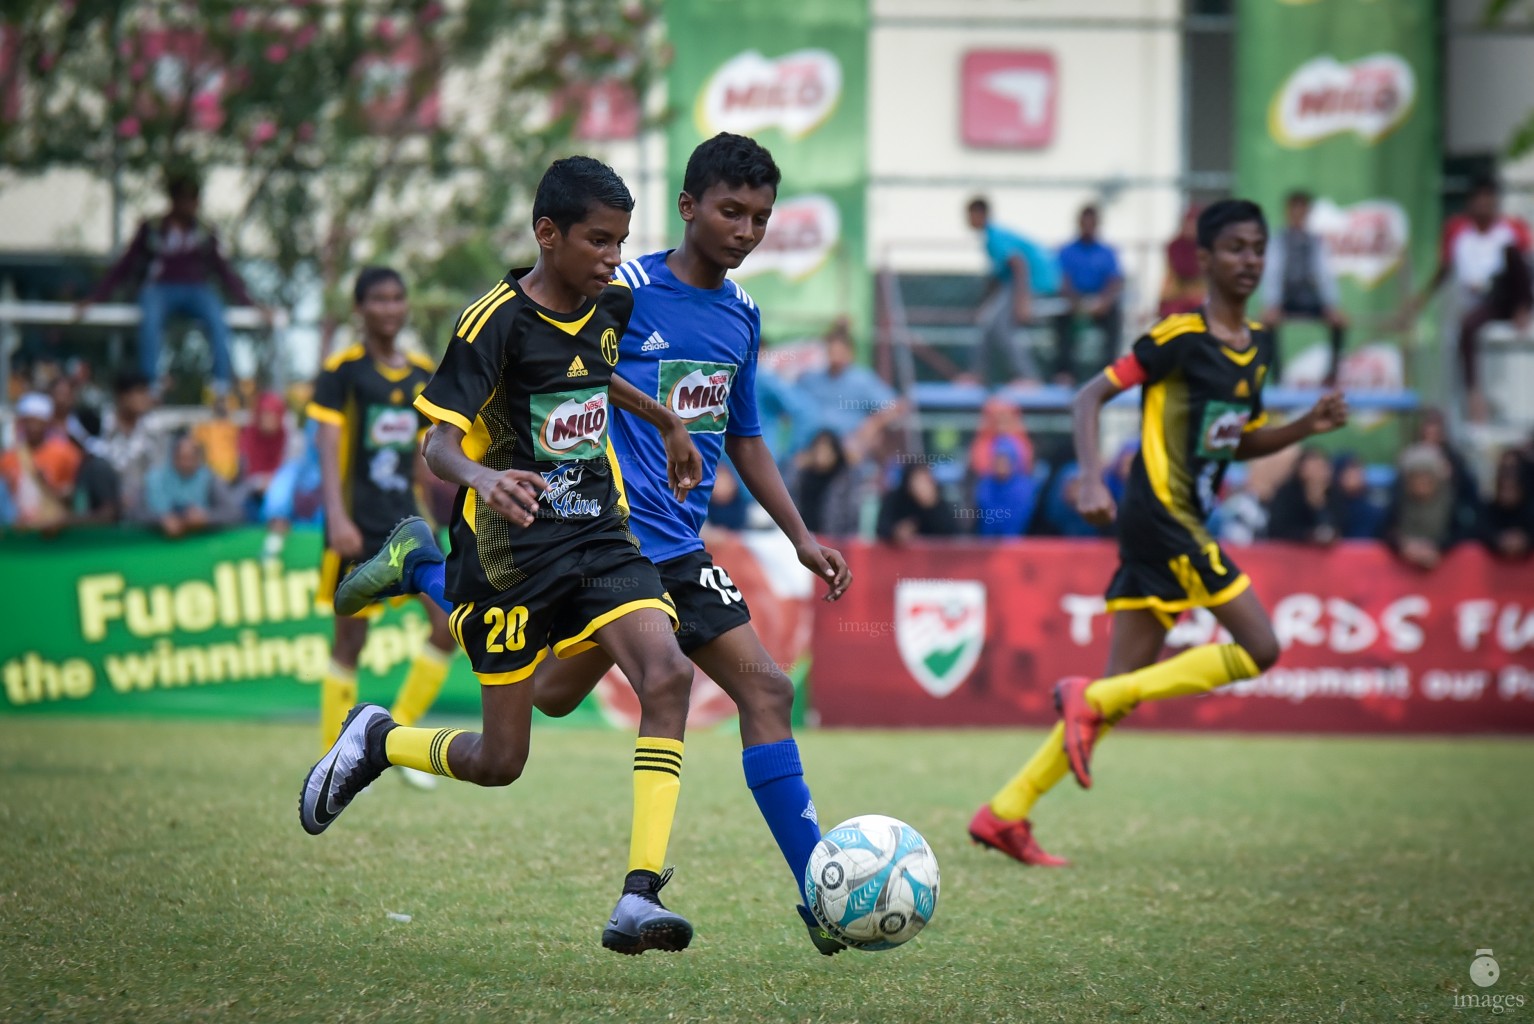 MILo Inter-school Football Tournament- Under 14 Thaajudheen vs K.Huraa School